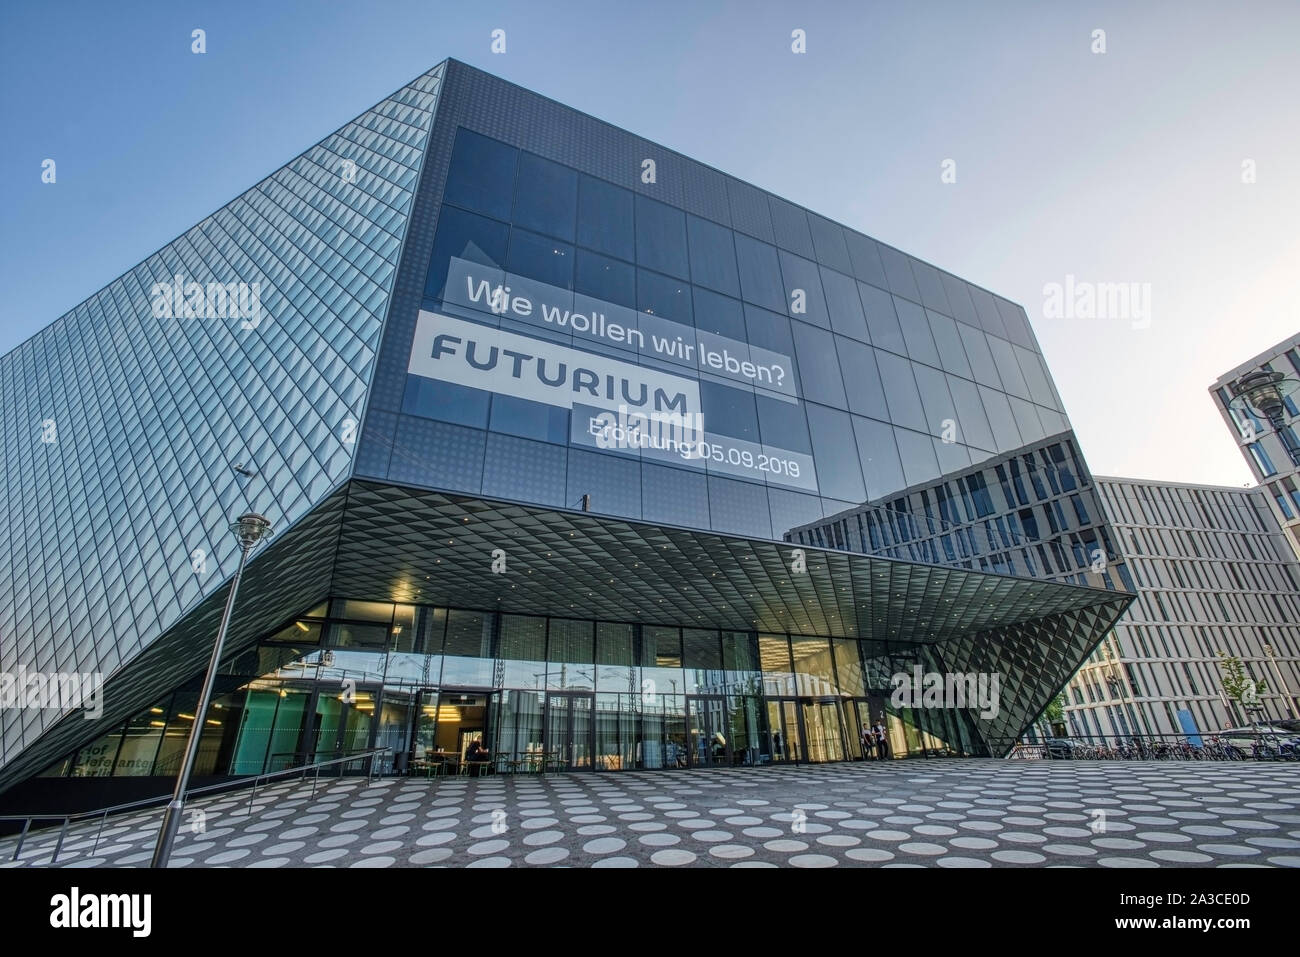 Futurium, Haus der Zukunft, Berlin Mitte, Berlin, Germany, Europe Stock Photo